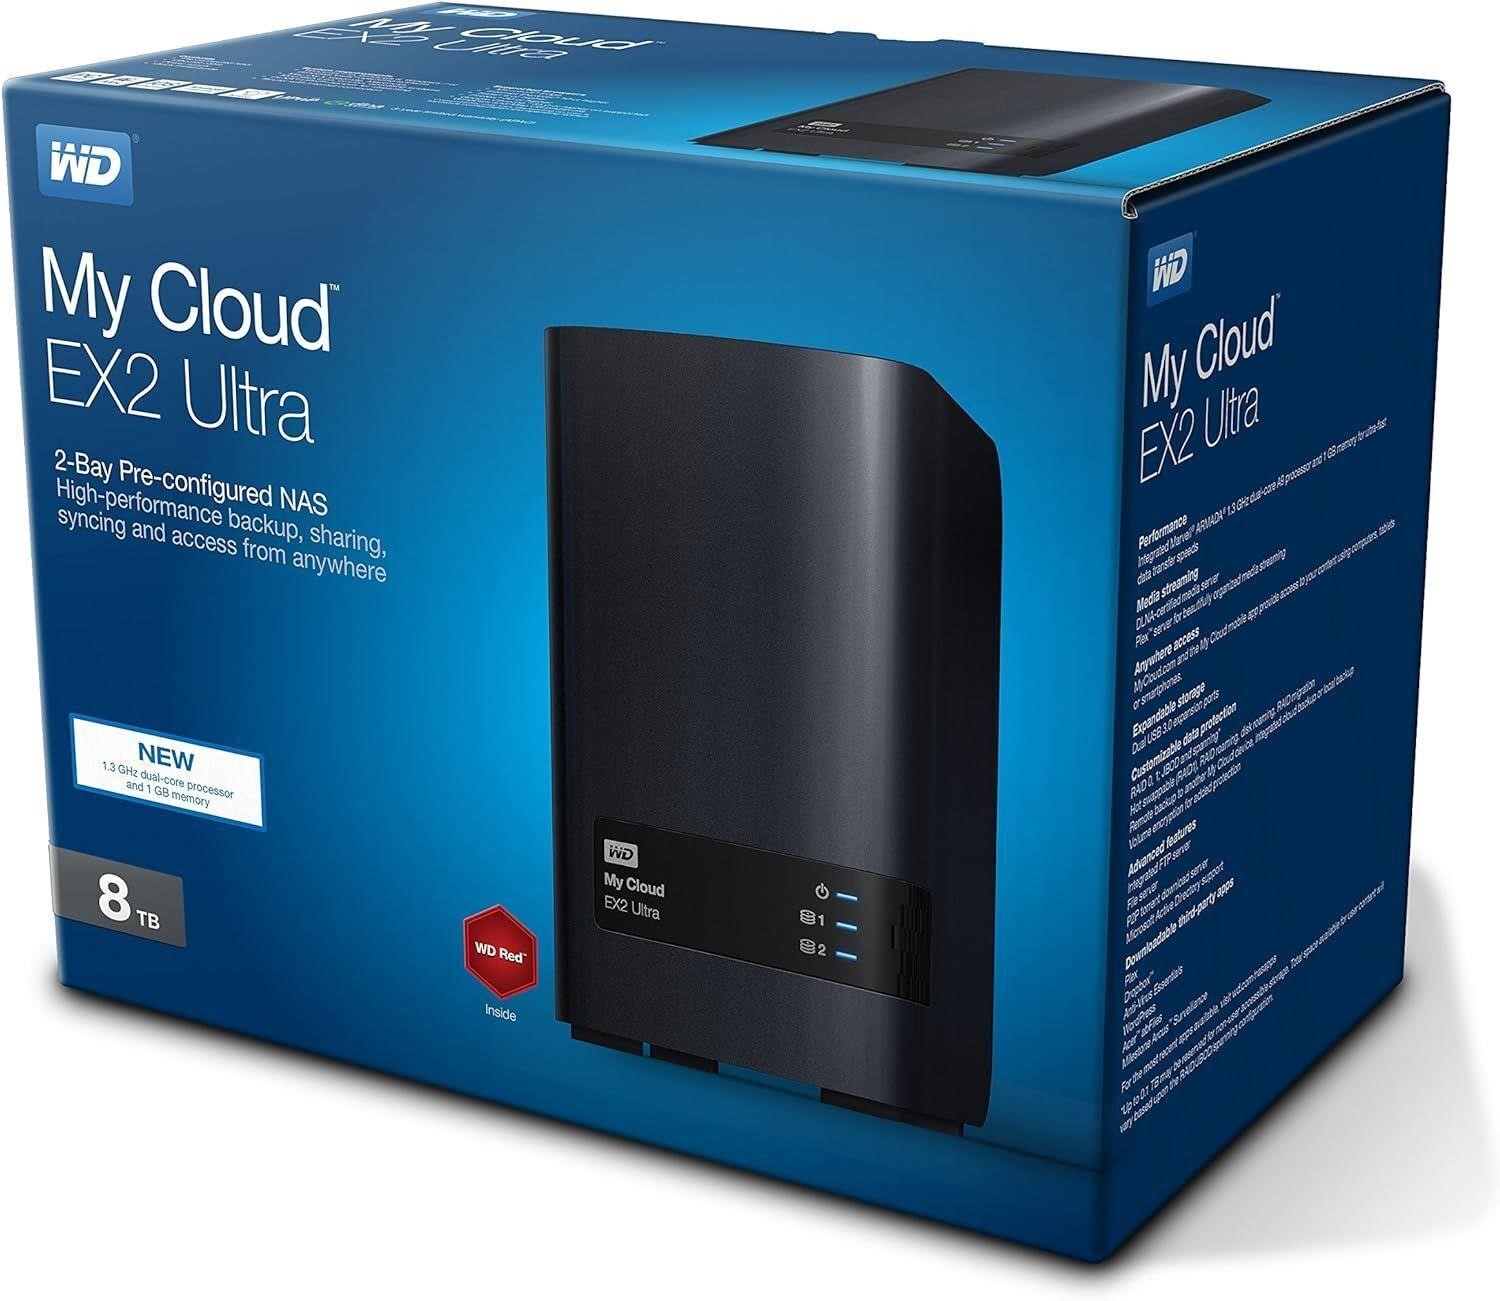 Western Digital 8TB My Cloud EX2 Ultra Network